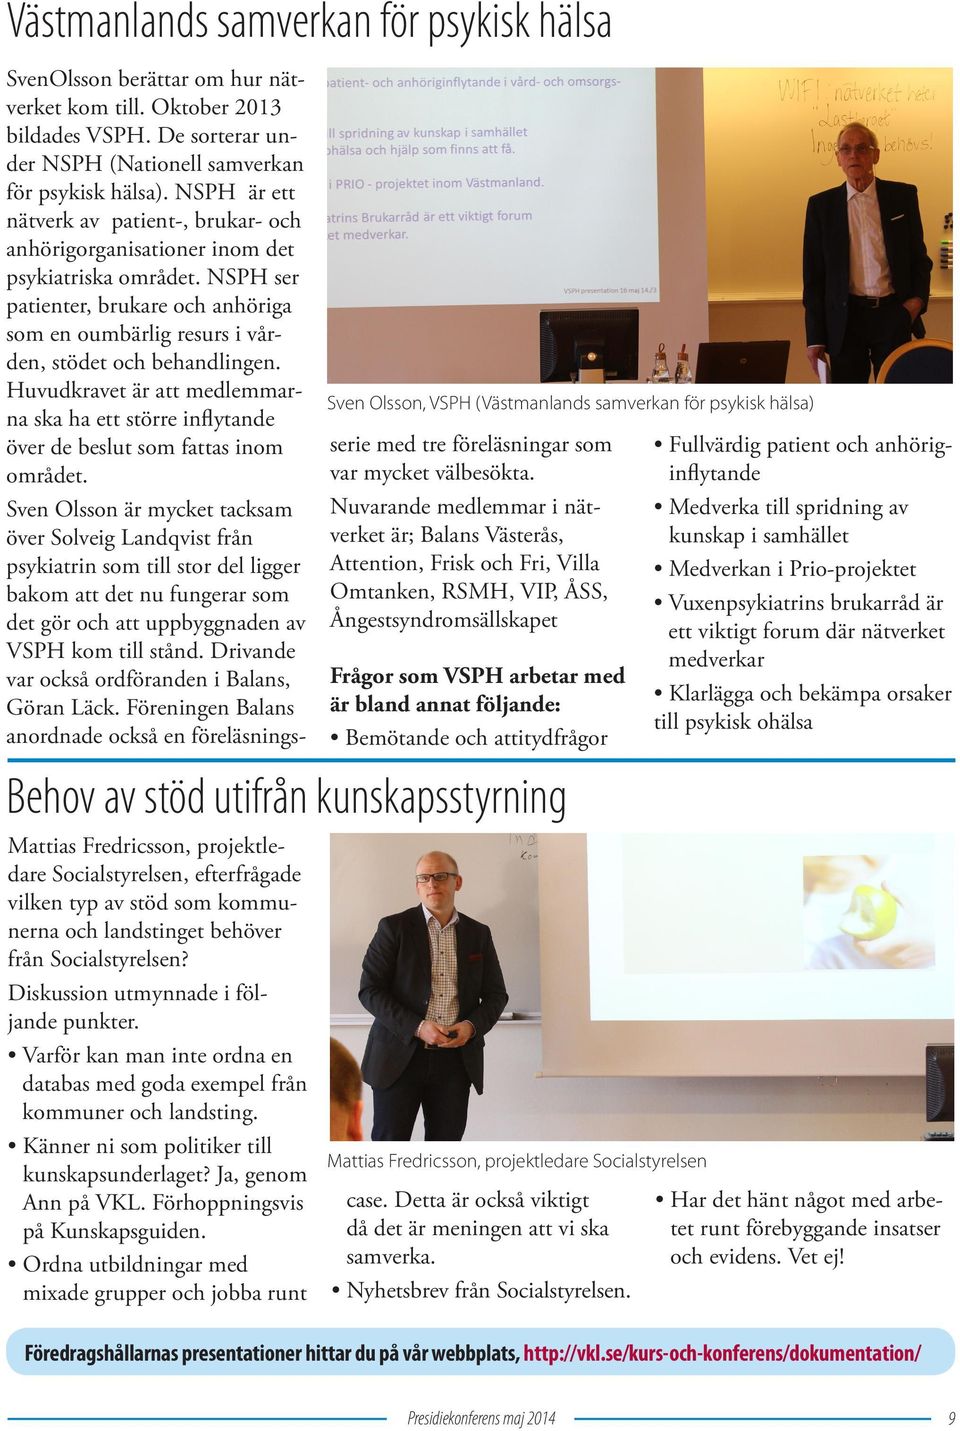 Förhoppningsvis på Kunskapsguiden. Ordna utbildningar med mixade grupper och jobba runt SvenOlsson berättar om hur nätverket kom till. Oktober 2013 bildades VSPH.